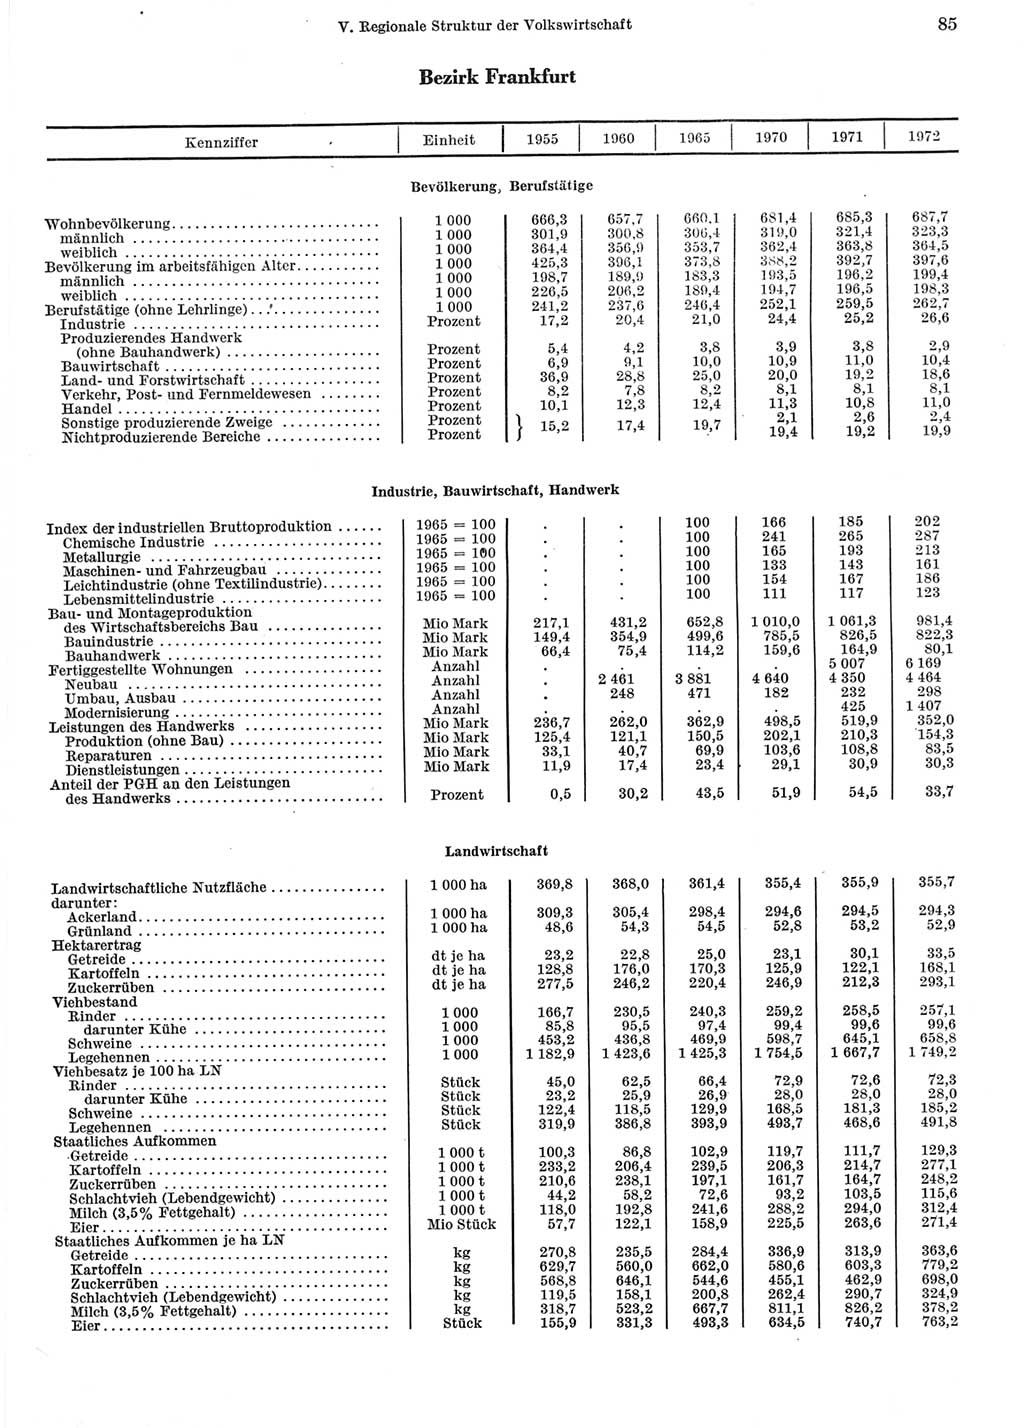 Statistisches Jahrbuch der Deutschen Demokratischen Republik (DDR) 1973, Seite 85 (Stat. Jb. DDR 1973, S. 85)